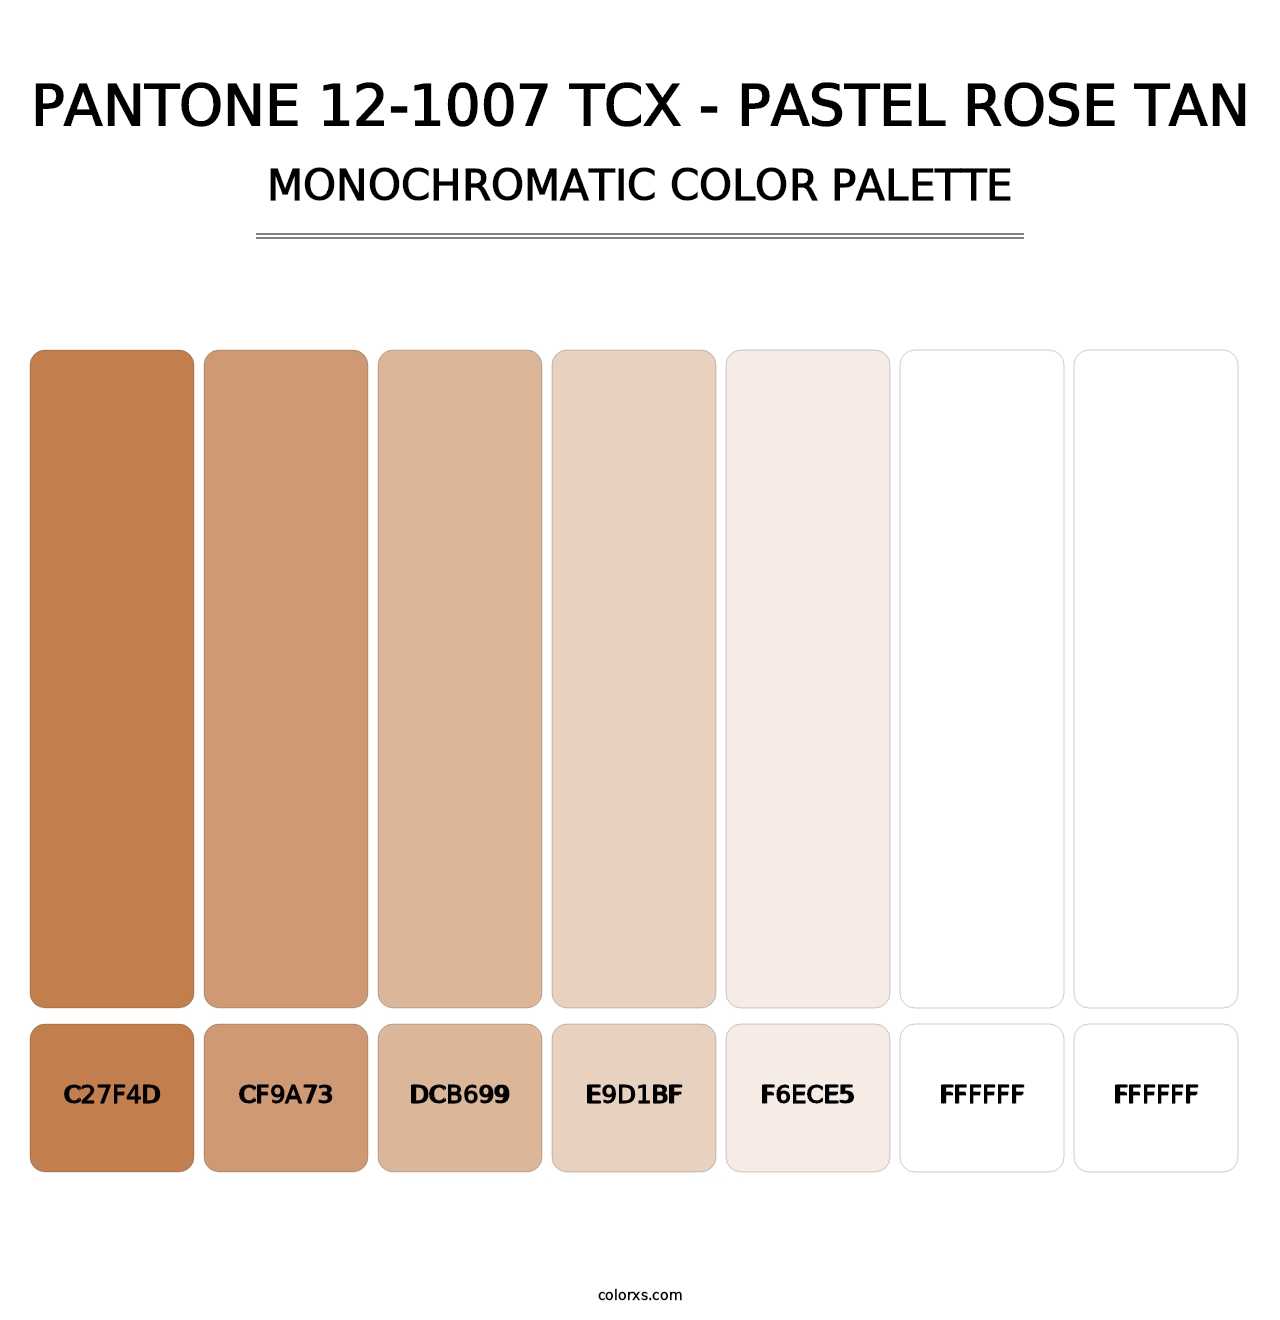 PANTONE 12-1007 TCX - Pastel Rose Tan - Monochromatic Color Palette